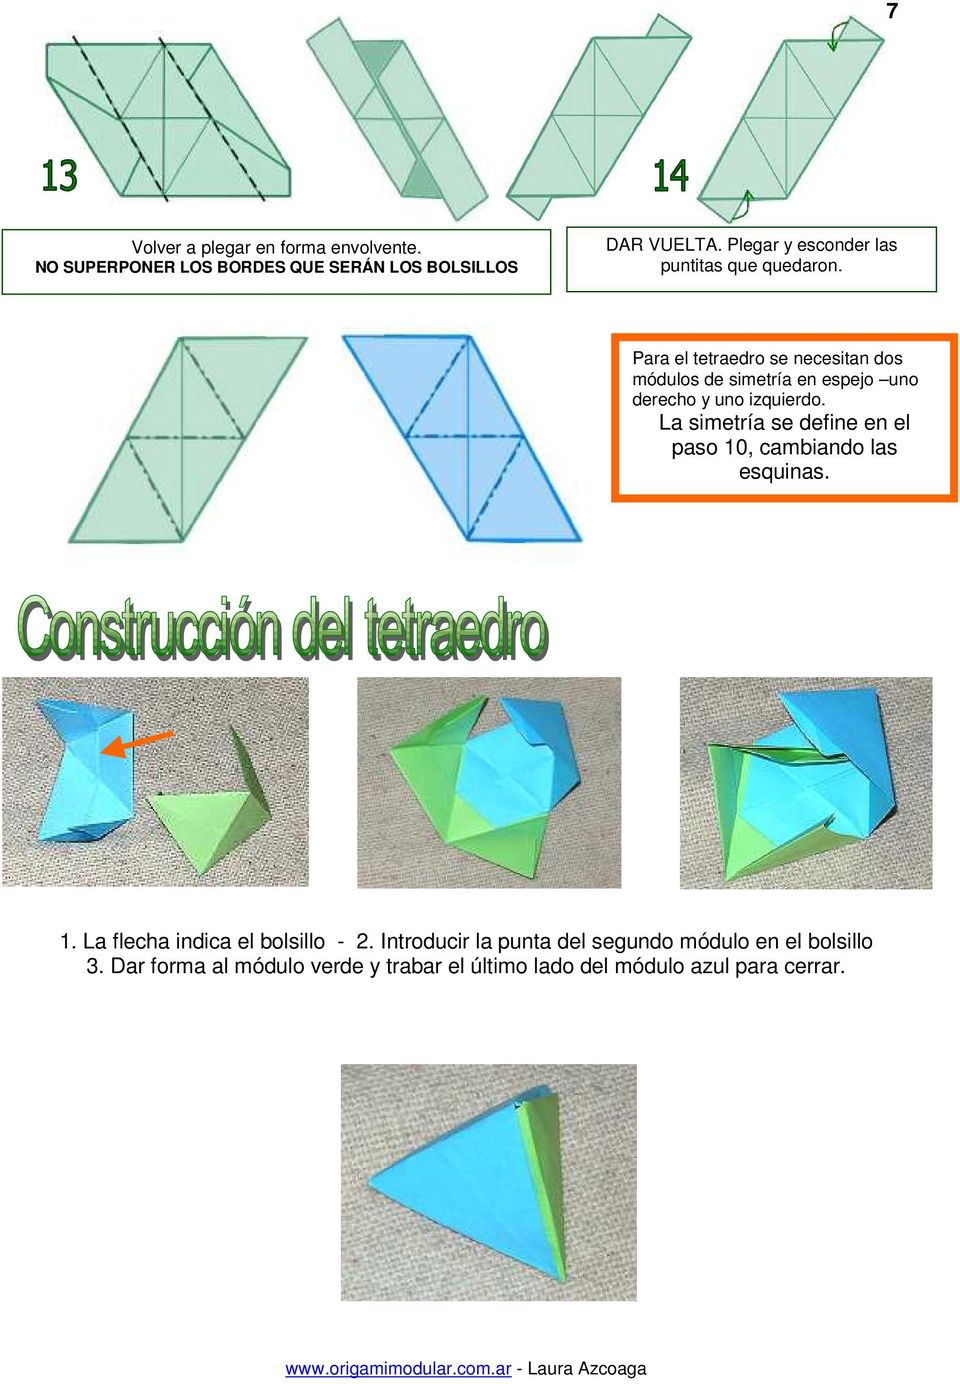 Para el tetraedro se necesitan dos módulos de simetría en espejo uno derecho y uno izquierdo.